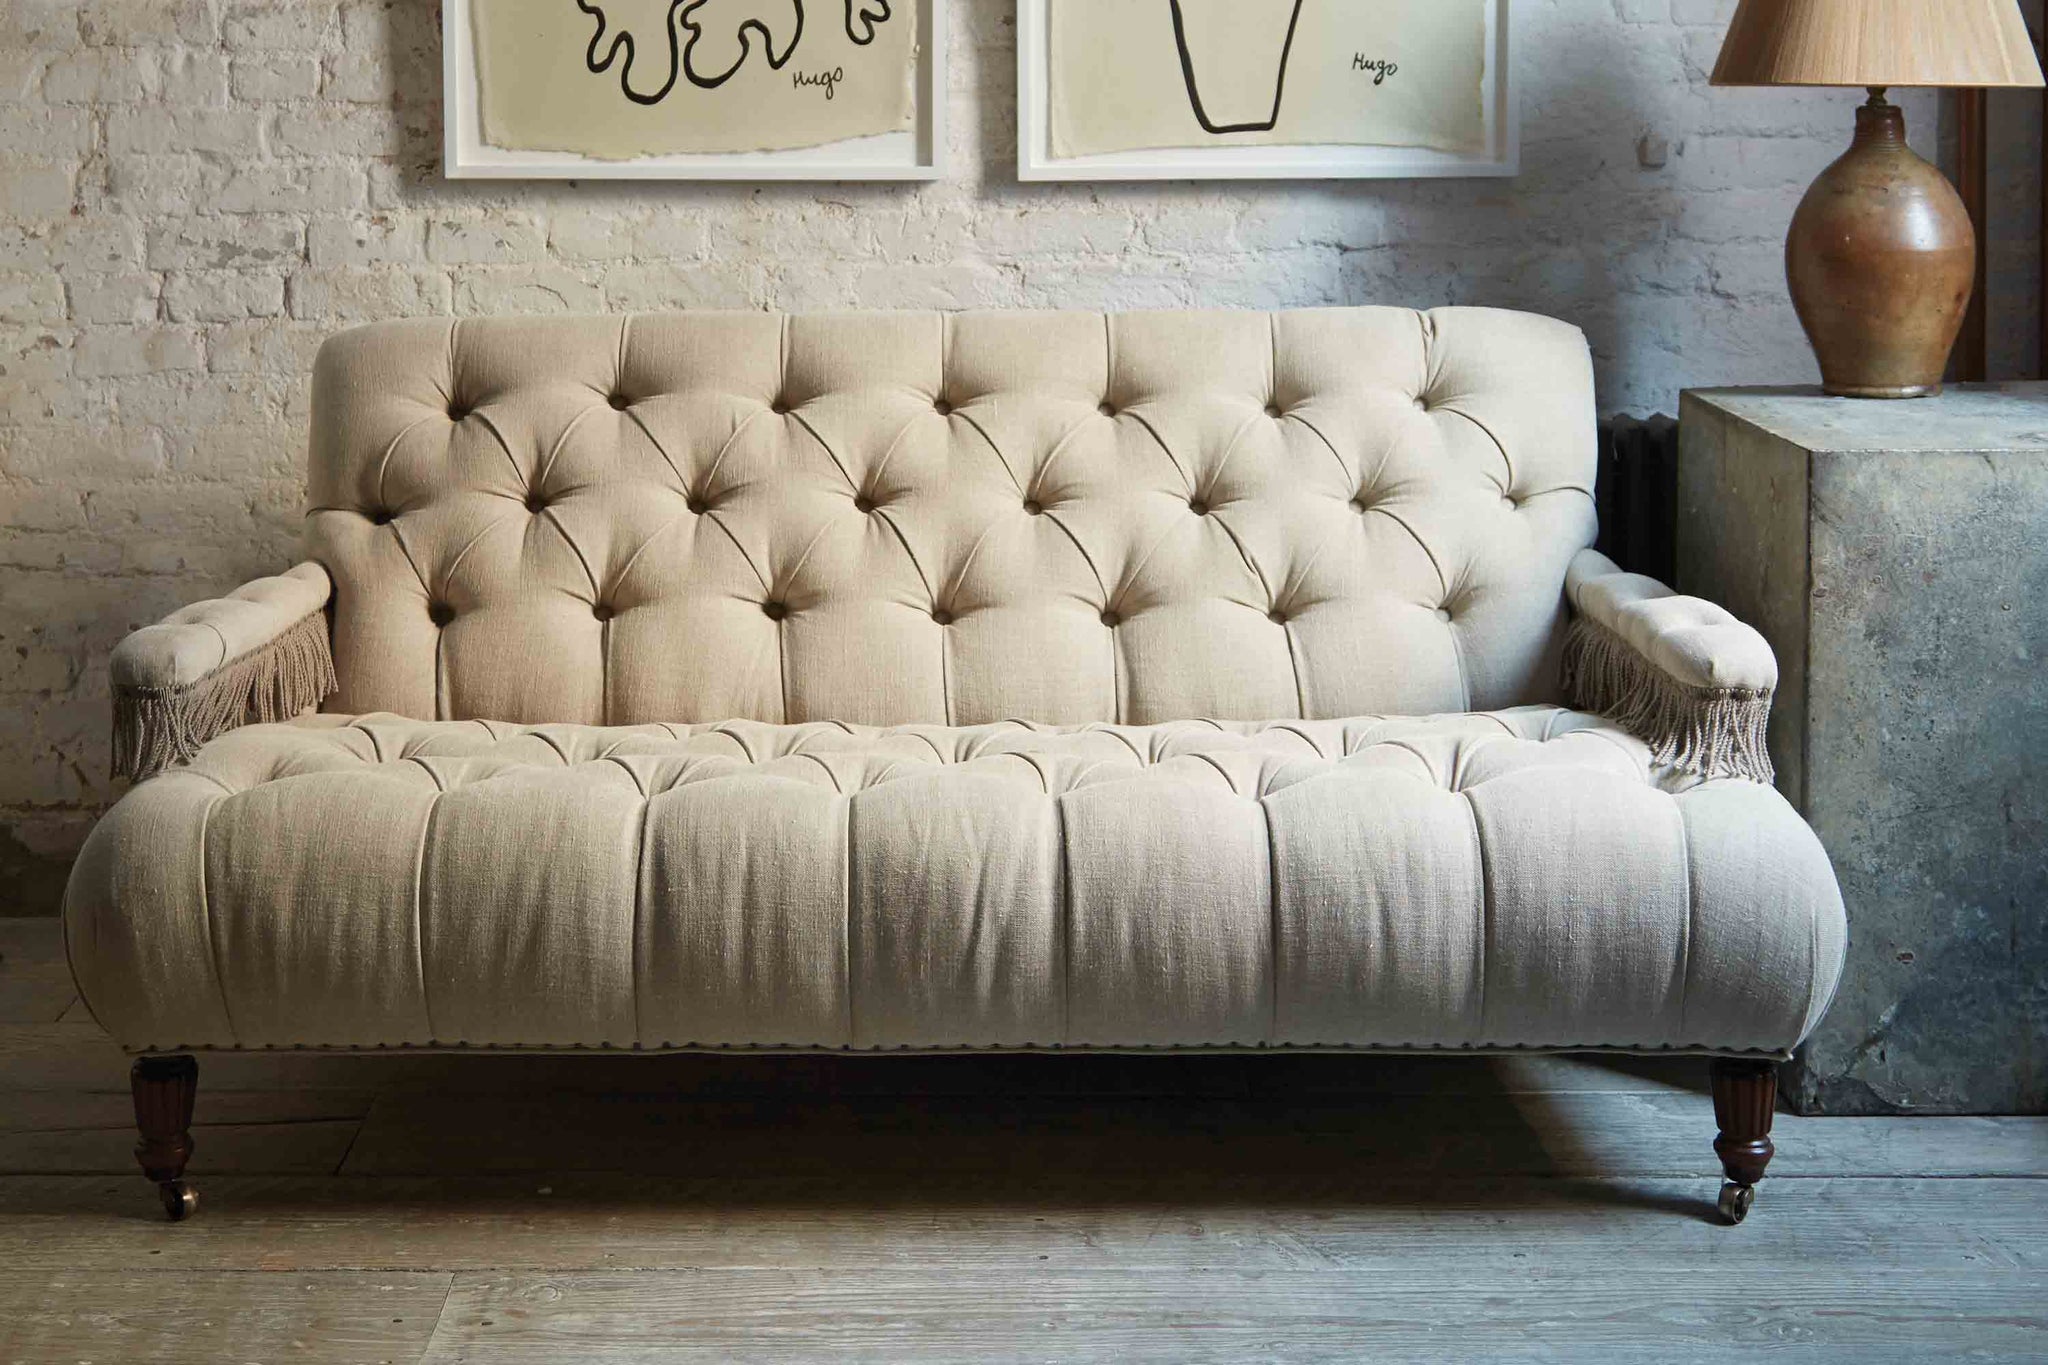  簇绒小型沙发在一个天然的复古亚麻亚麻与流苏在扶手休息. 房间里有日光，白色砖墙和木地板. 